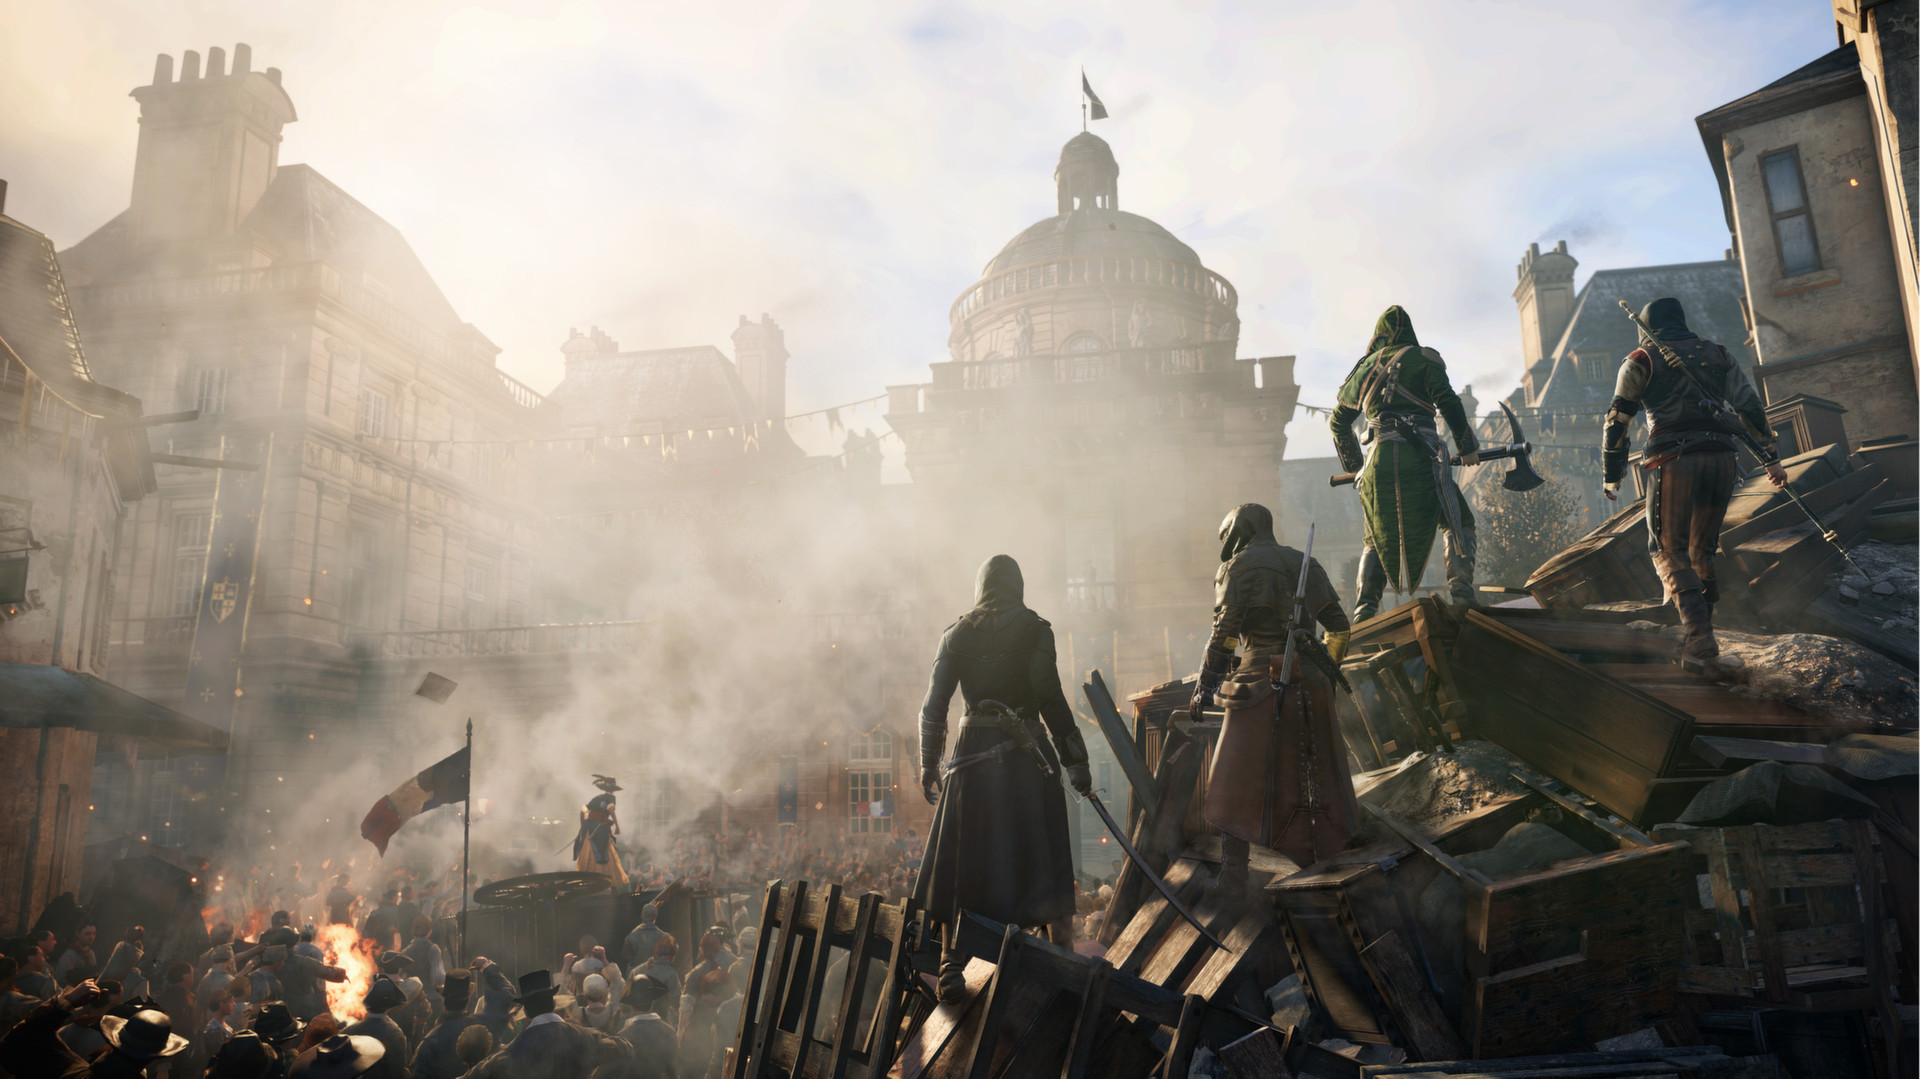 hardMOB - Revelado os requisitos de Assassin's Creed Unity